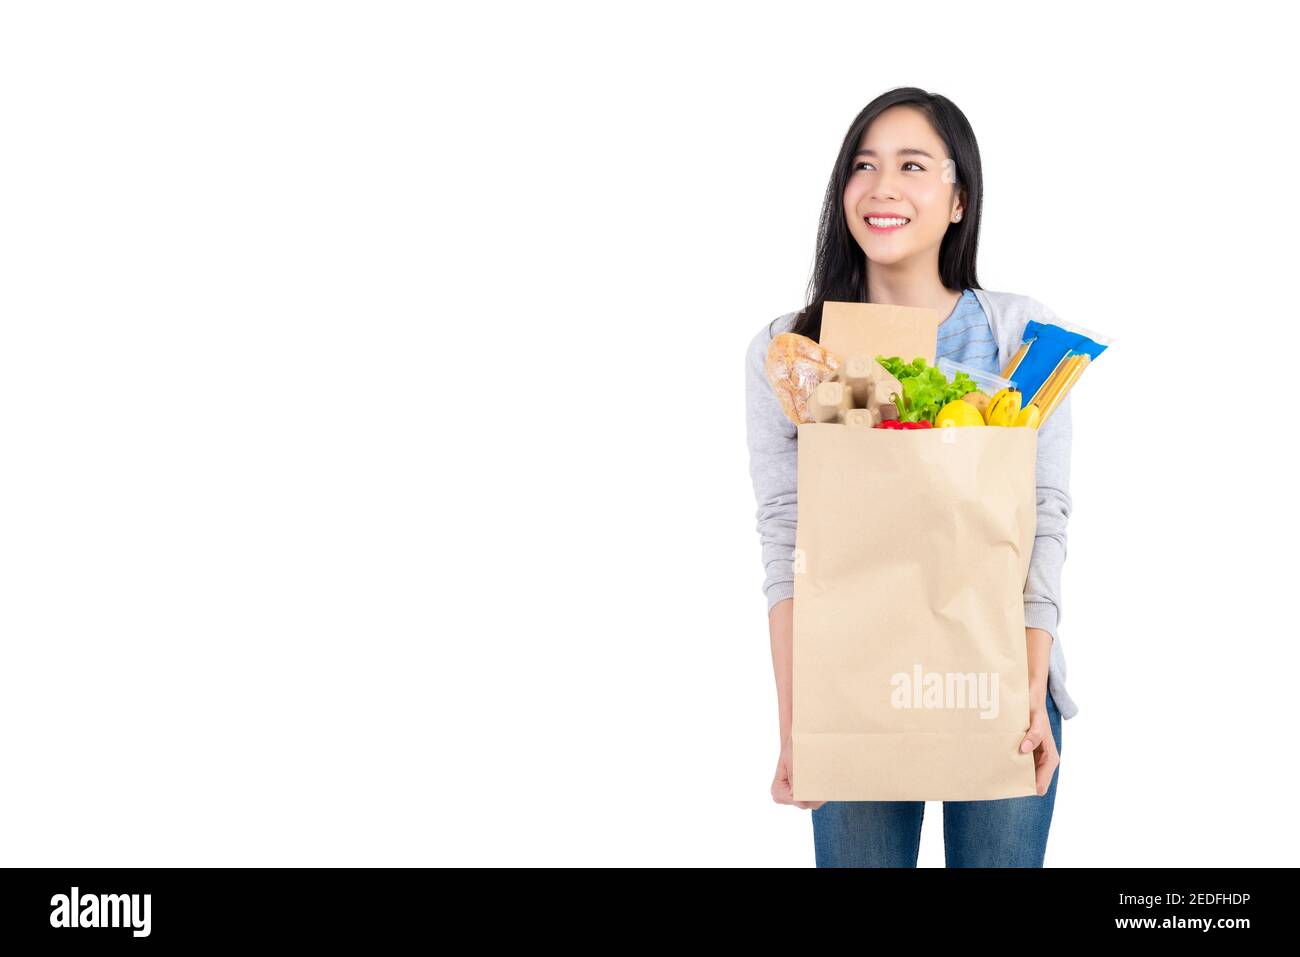 Belle femme asiatique tenant un sac de shopping en papier plein de légumes et d'épicerie en regardant l'espace à côté, studio tourné isolé sur fond blanc Banque D'Images